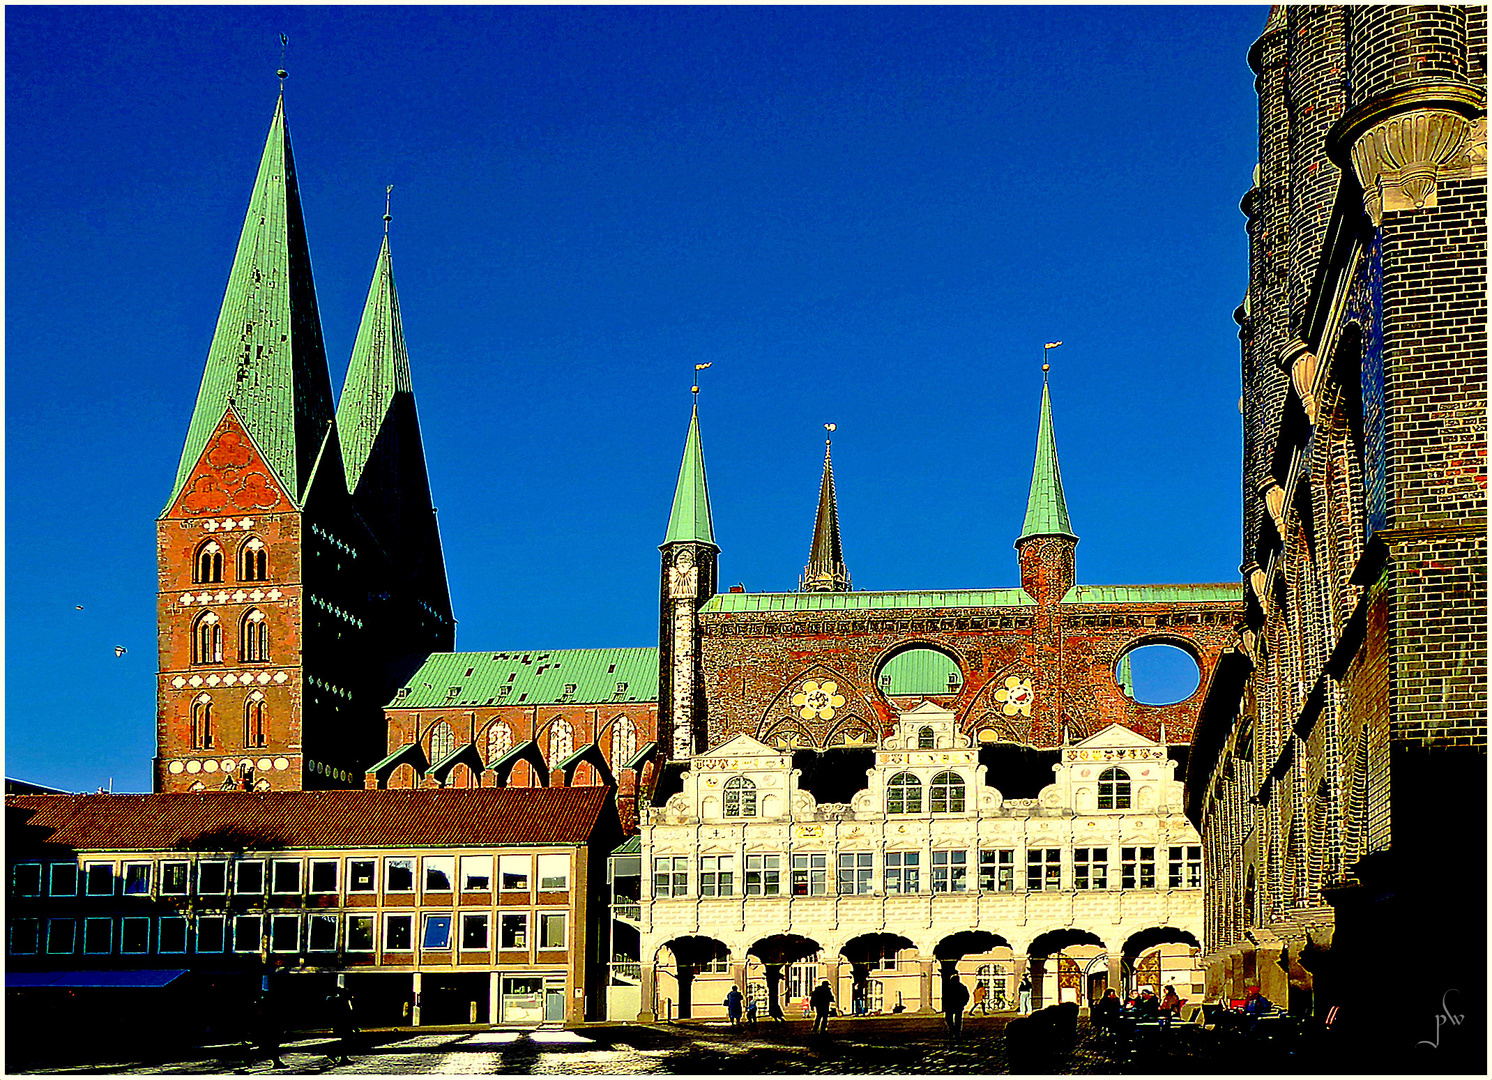 Lübeck - Marktplatz